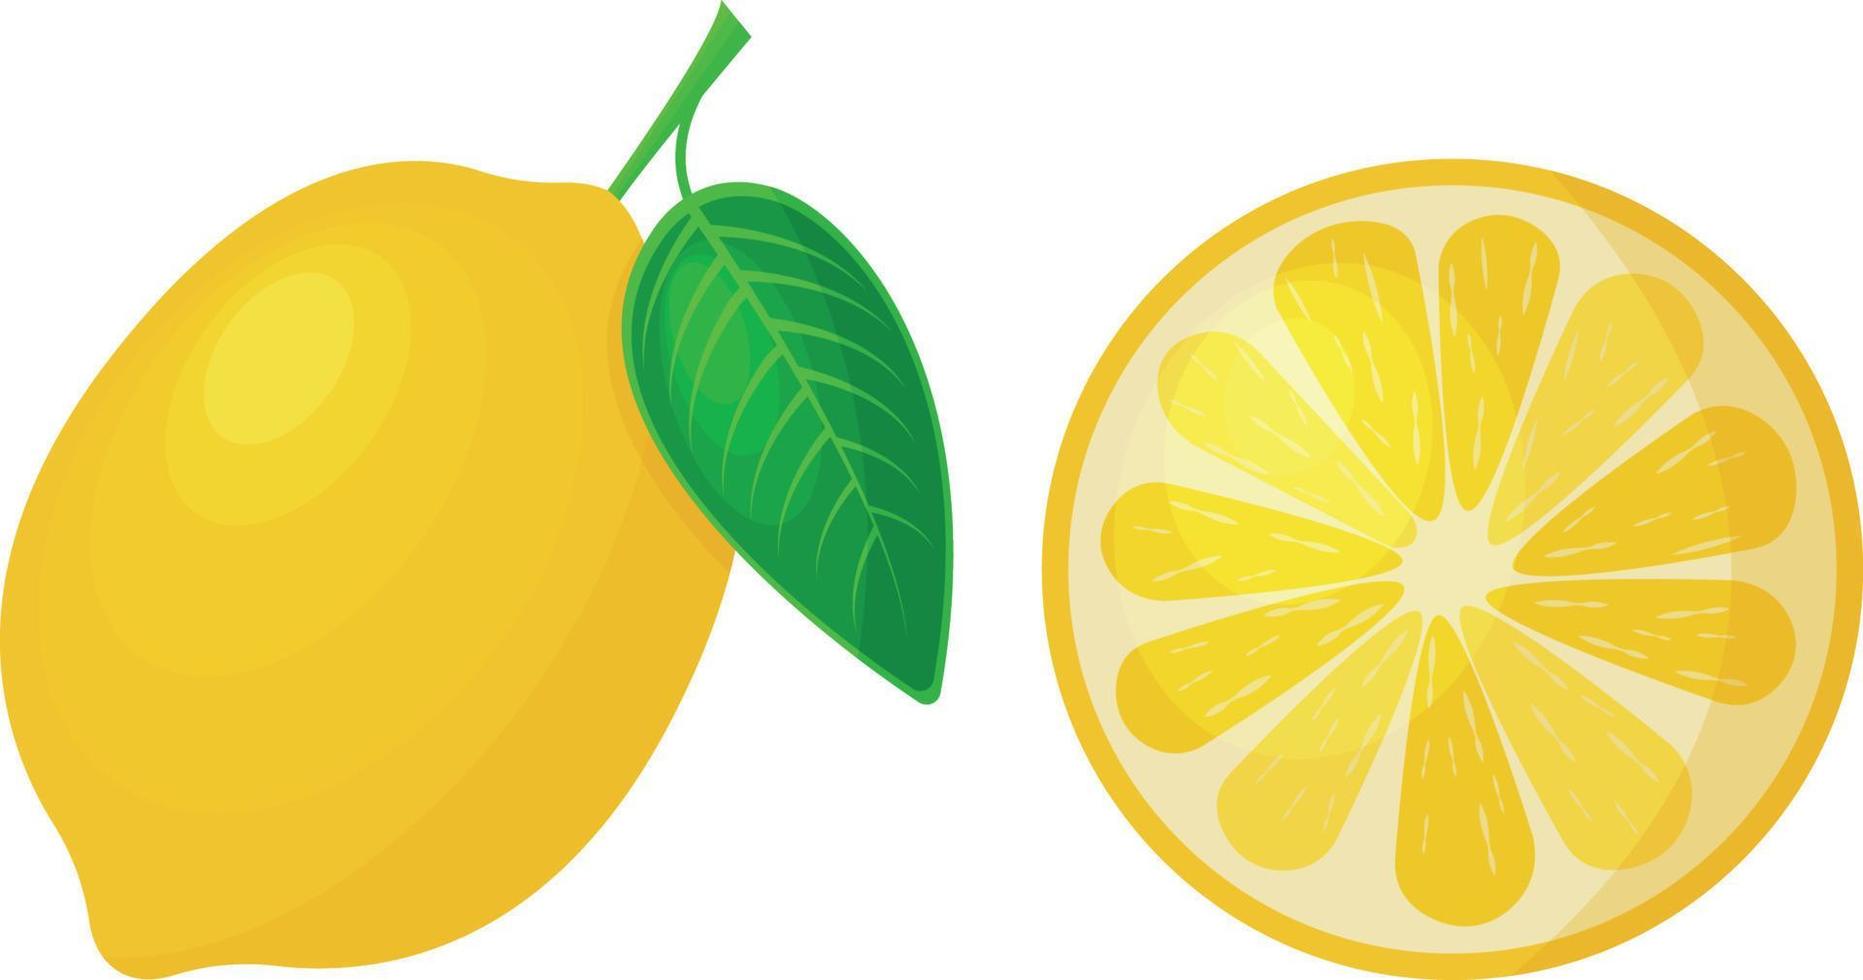 hell reife zitrone saftig gelbe zitrone in ganzer und geschnittener form. reife saure Frucht, Vektorillustration lokalisiert auf weißem Hintergrund. vektor